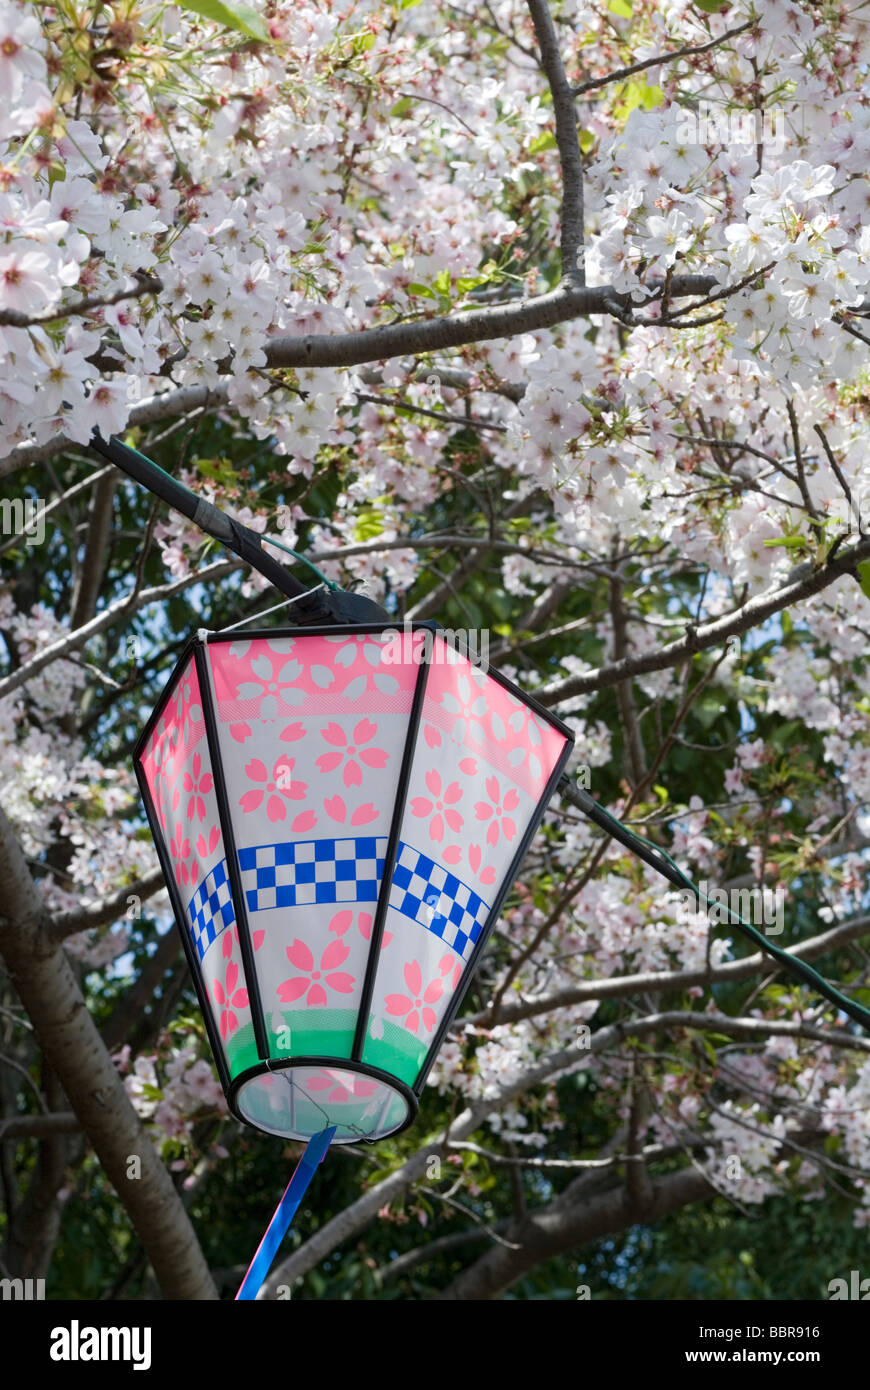 Un festival lanterne avec fleur de cerisier rose motifs est suspendue à un arbre en pleine floraison saisonnière Banque D'Images